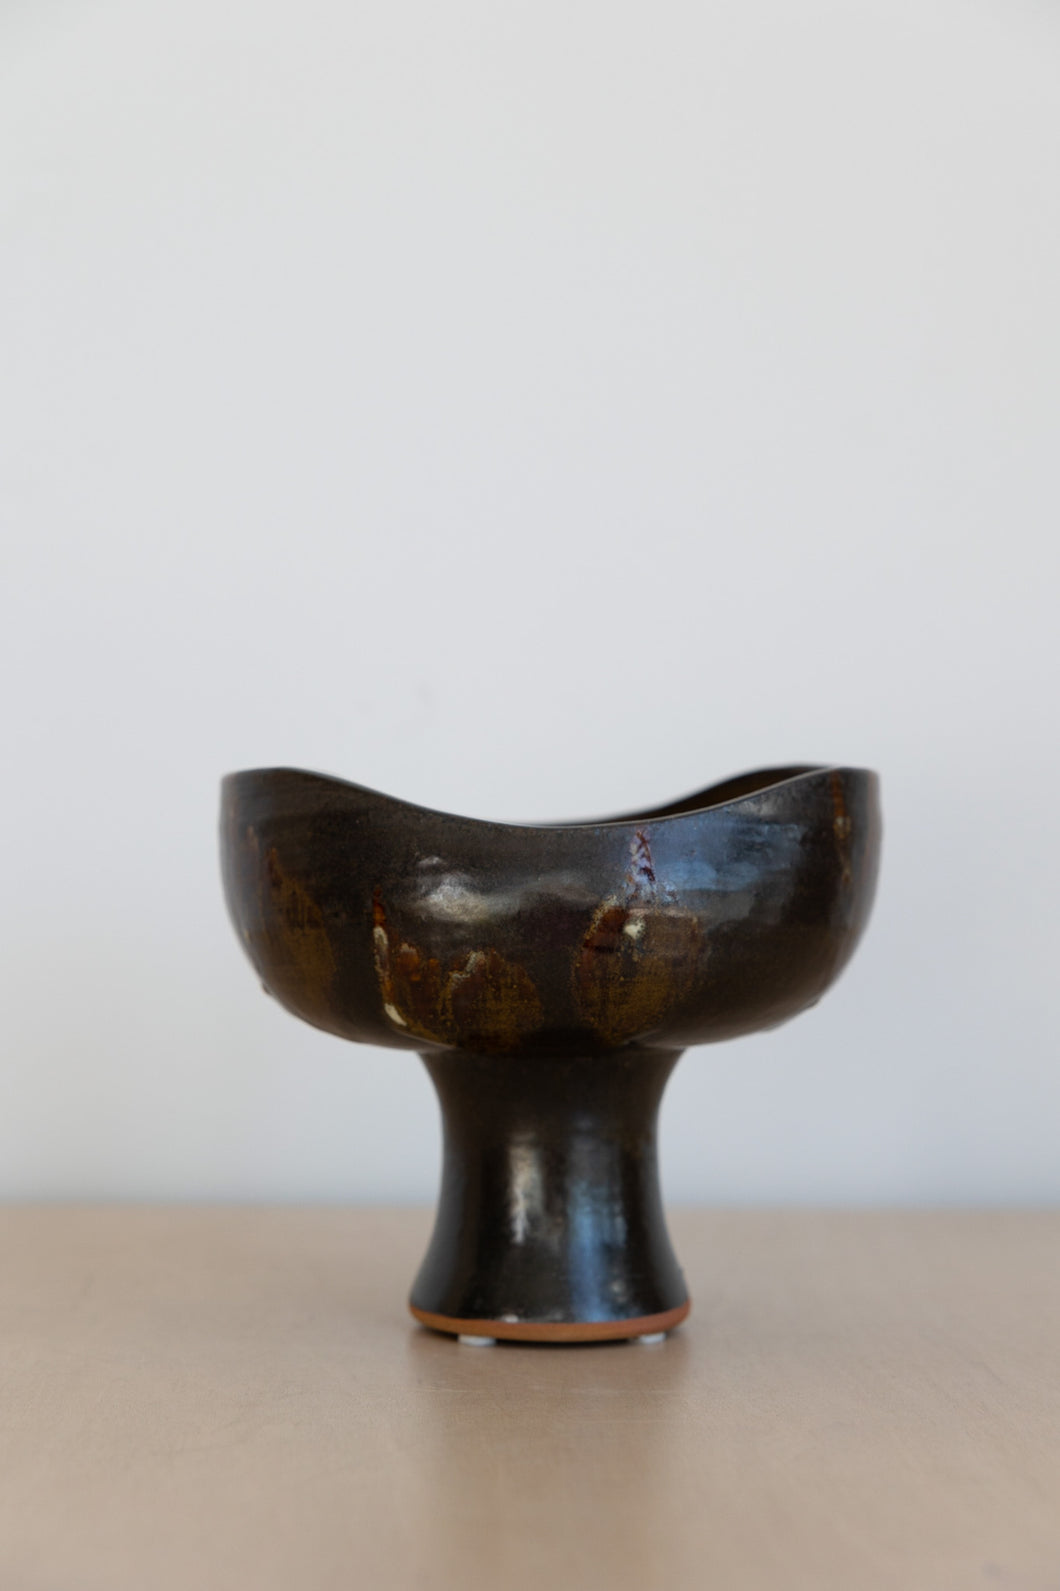 Vintage Ceramic Pedestal Vessel